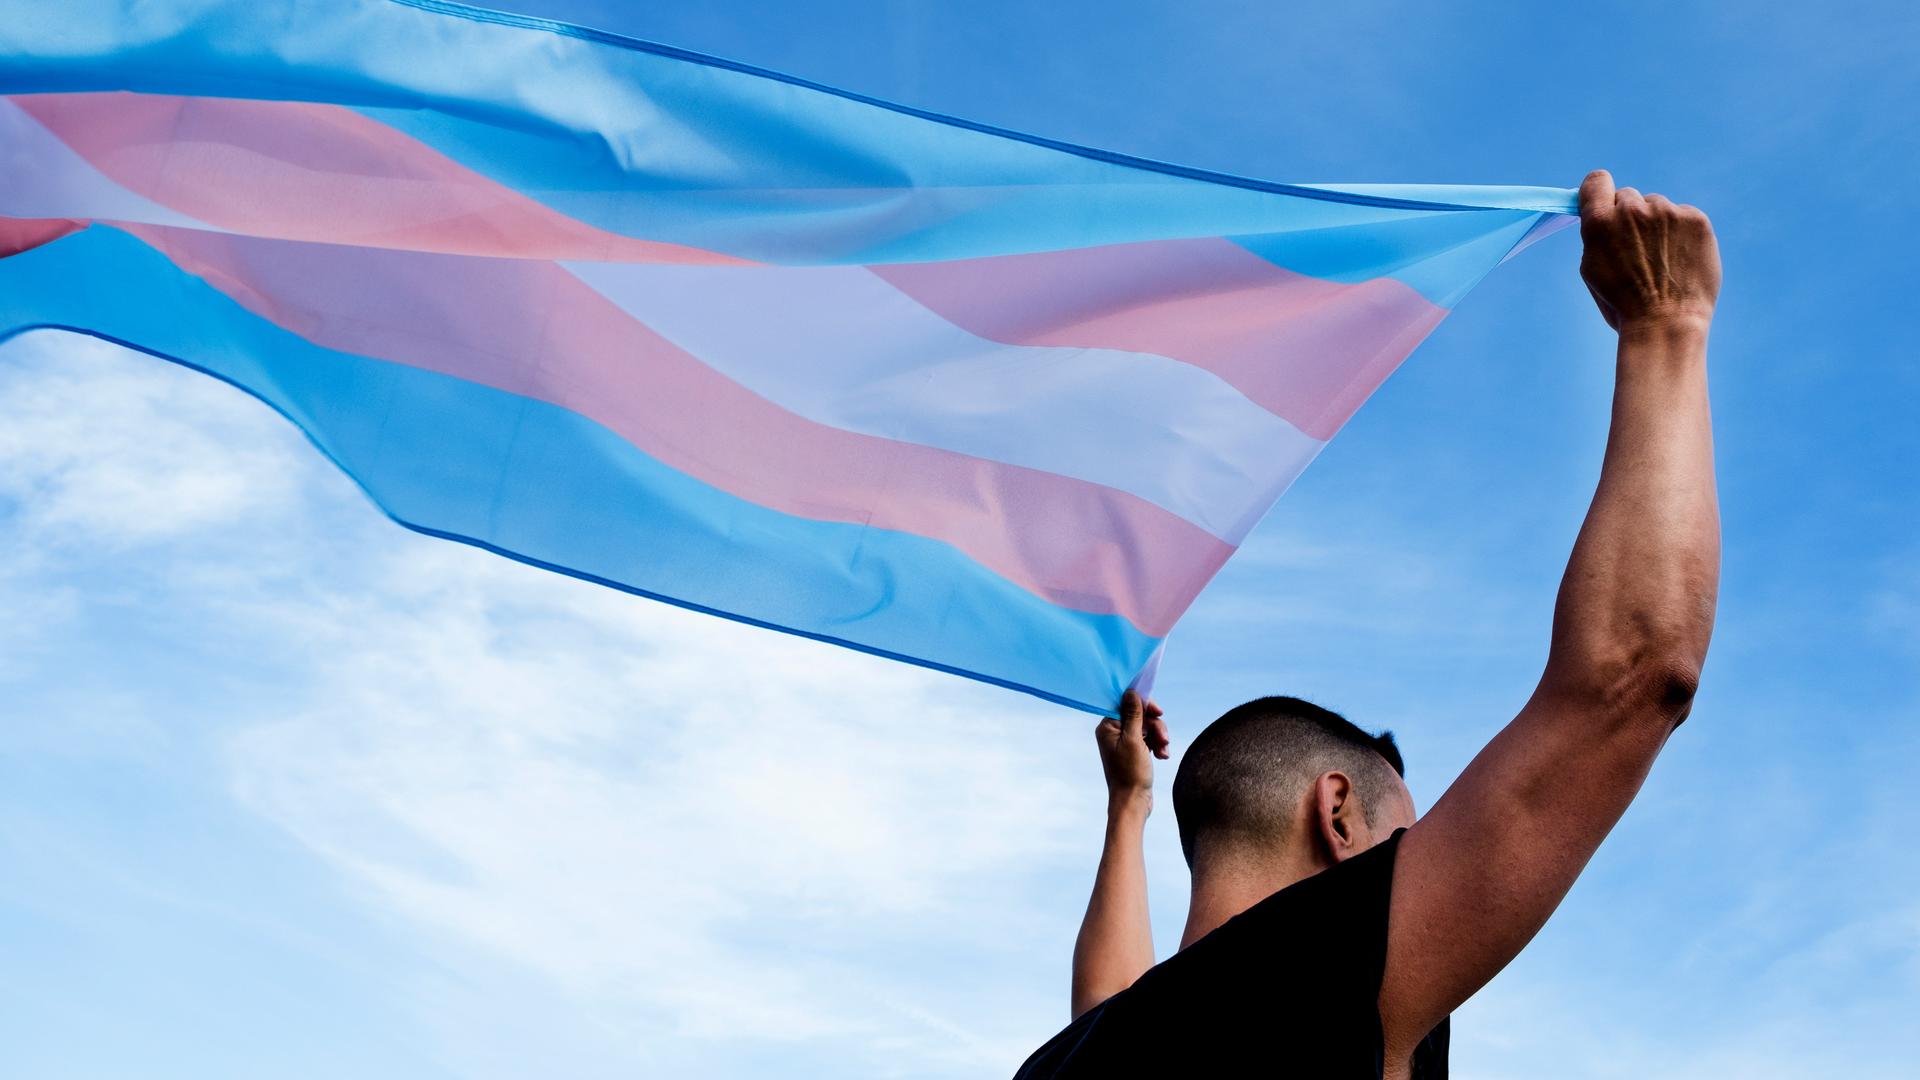 Eine männlich gelesene Person schwenkt die Transflagge in blau, lila und weiß über dem Kopf.